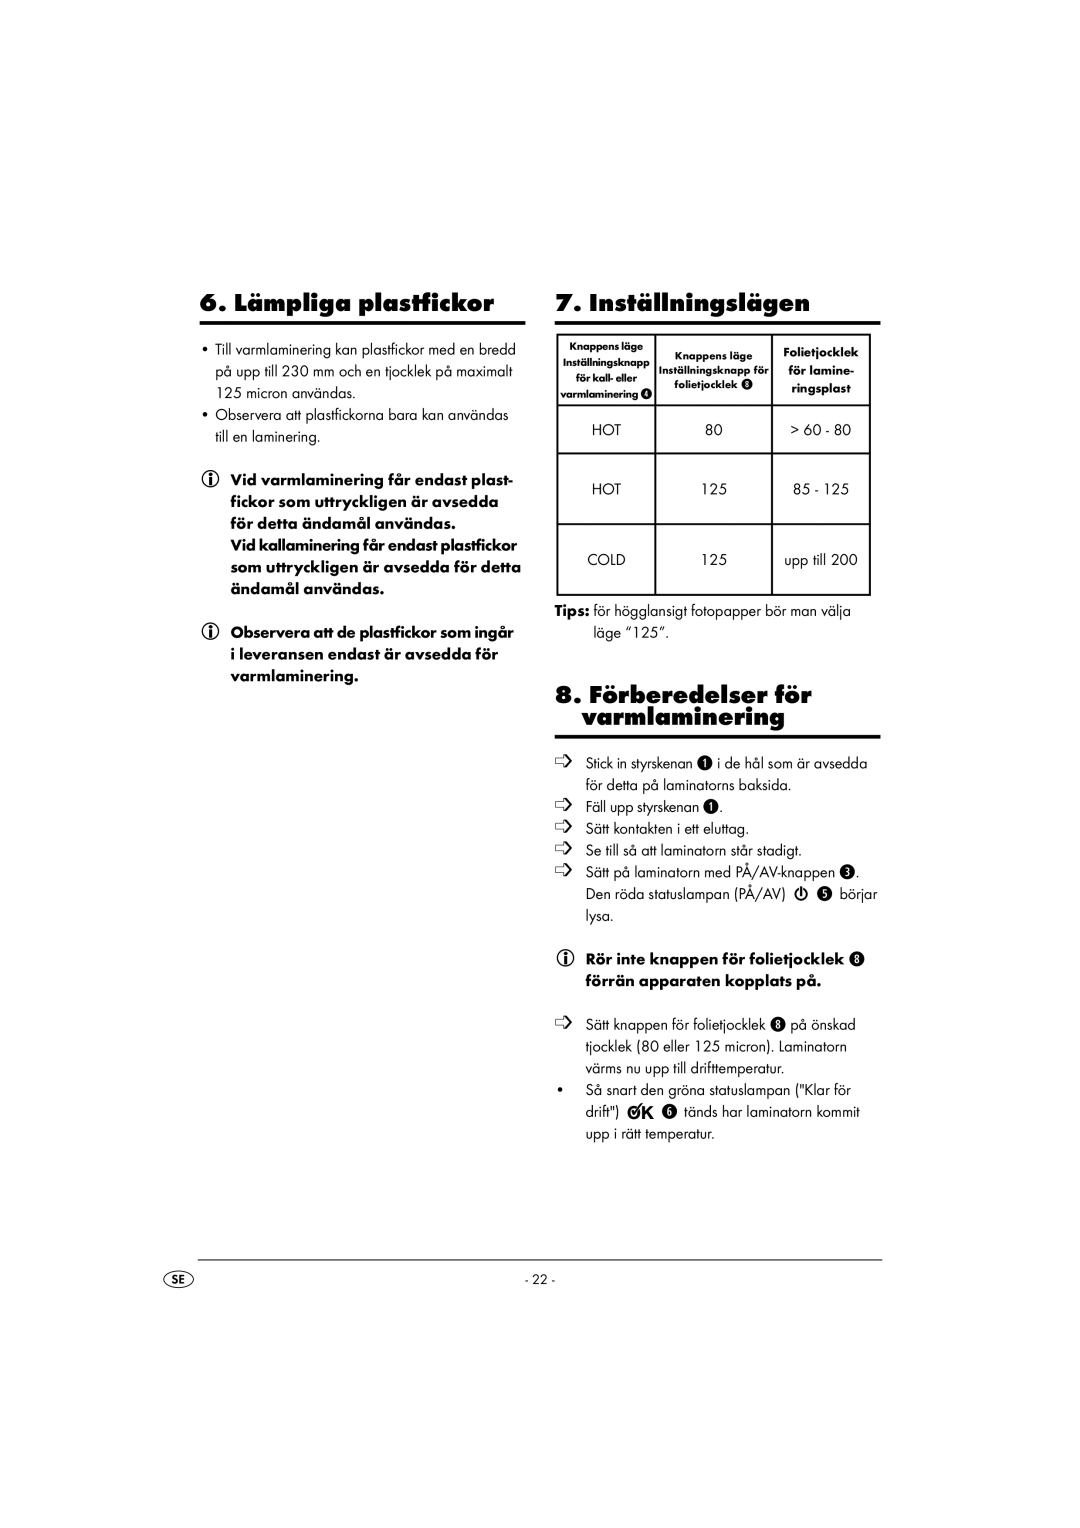 Kompernass KH 4412 manual 6. Lämpliga plastfickor, Inställningslägen, 8. Förberedelser för varmlaminering 